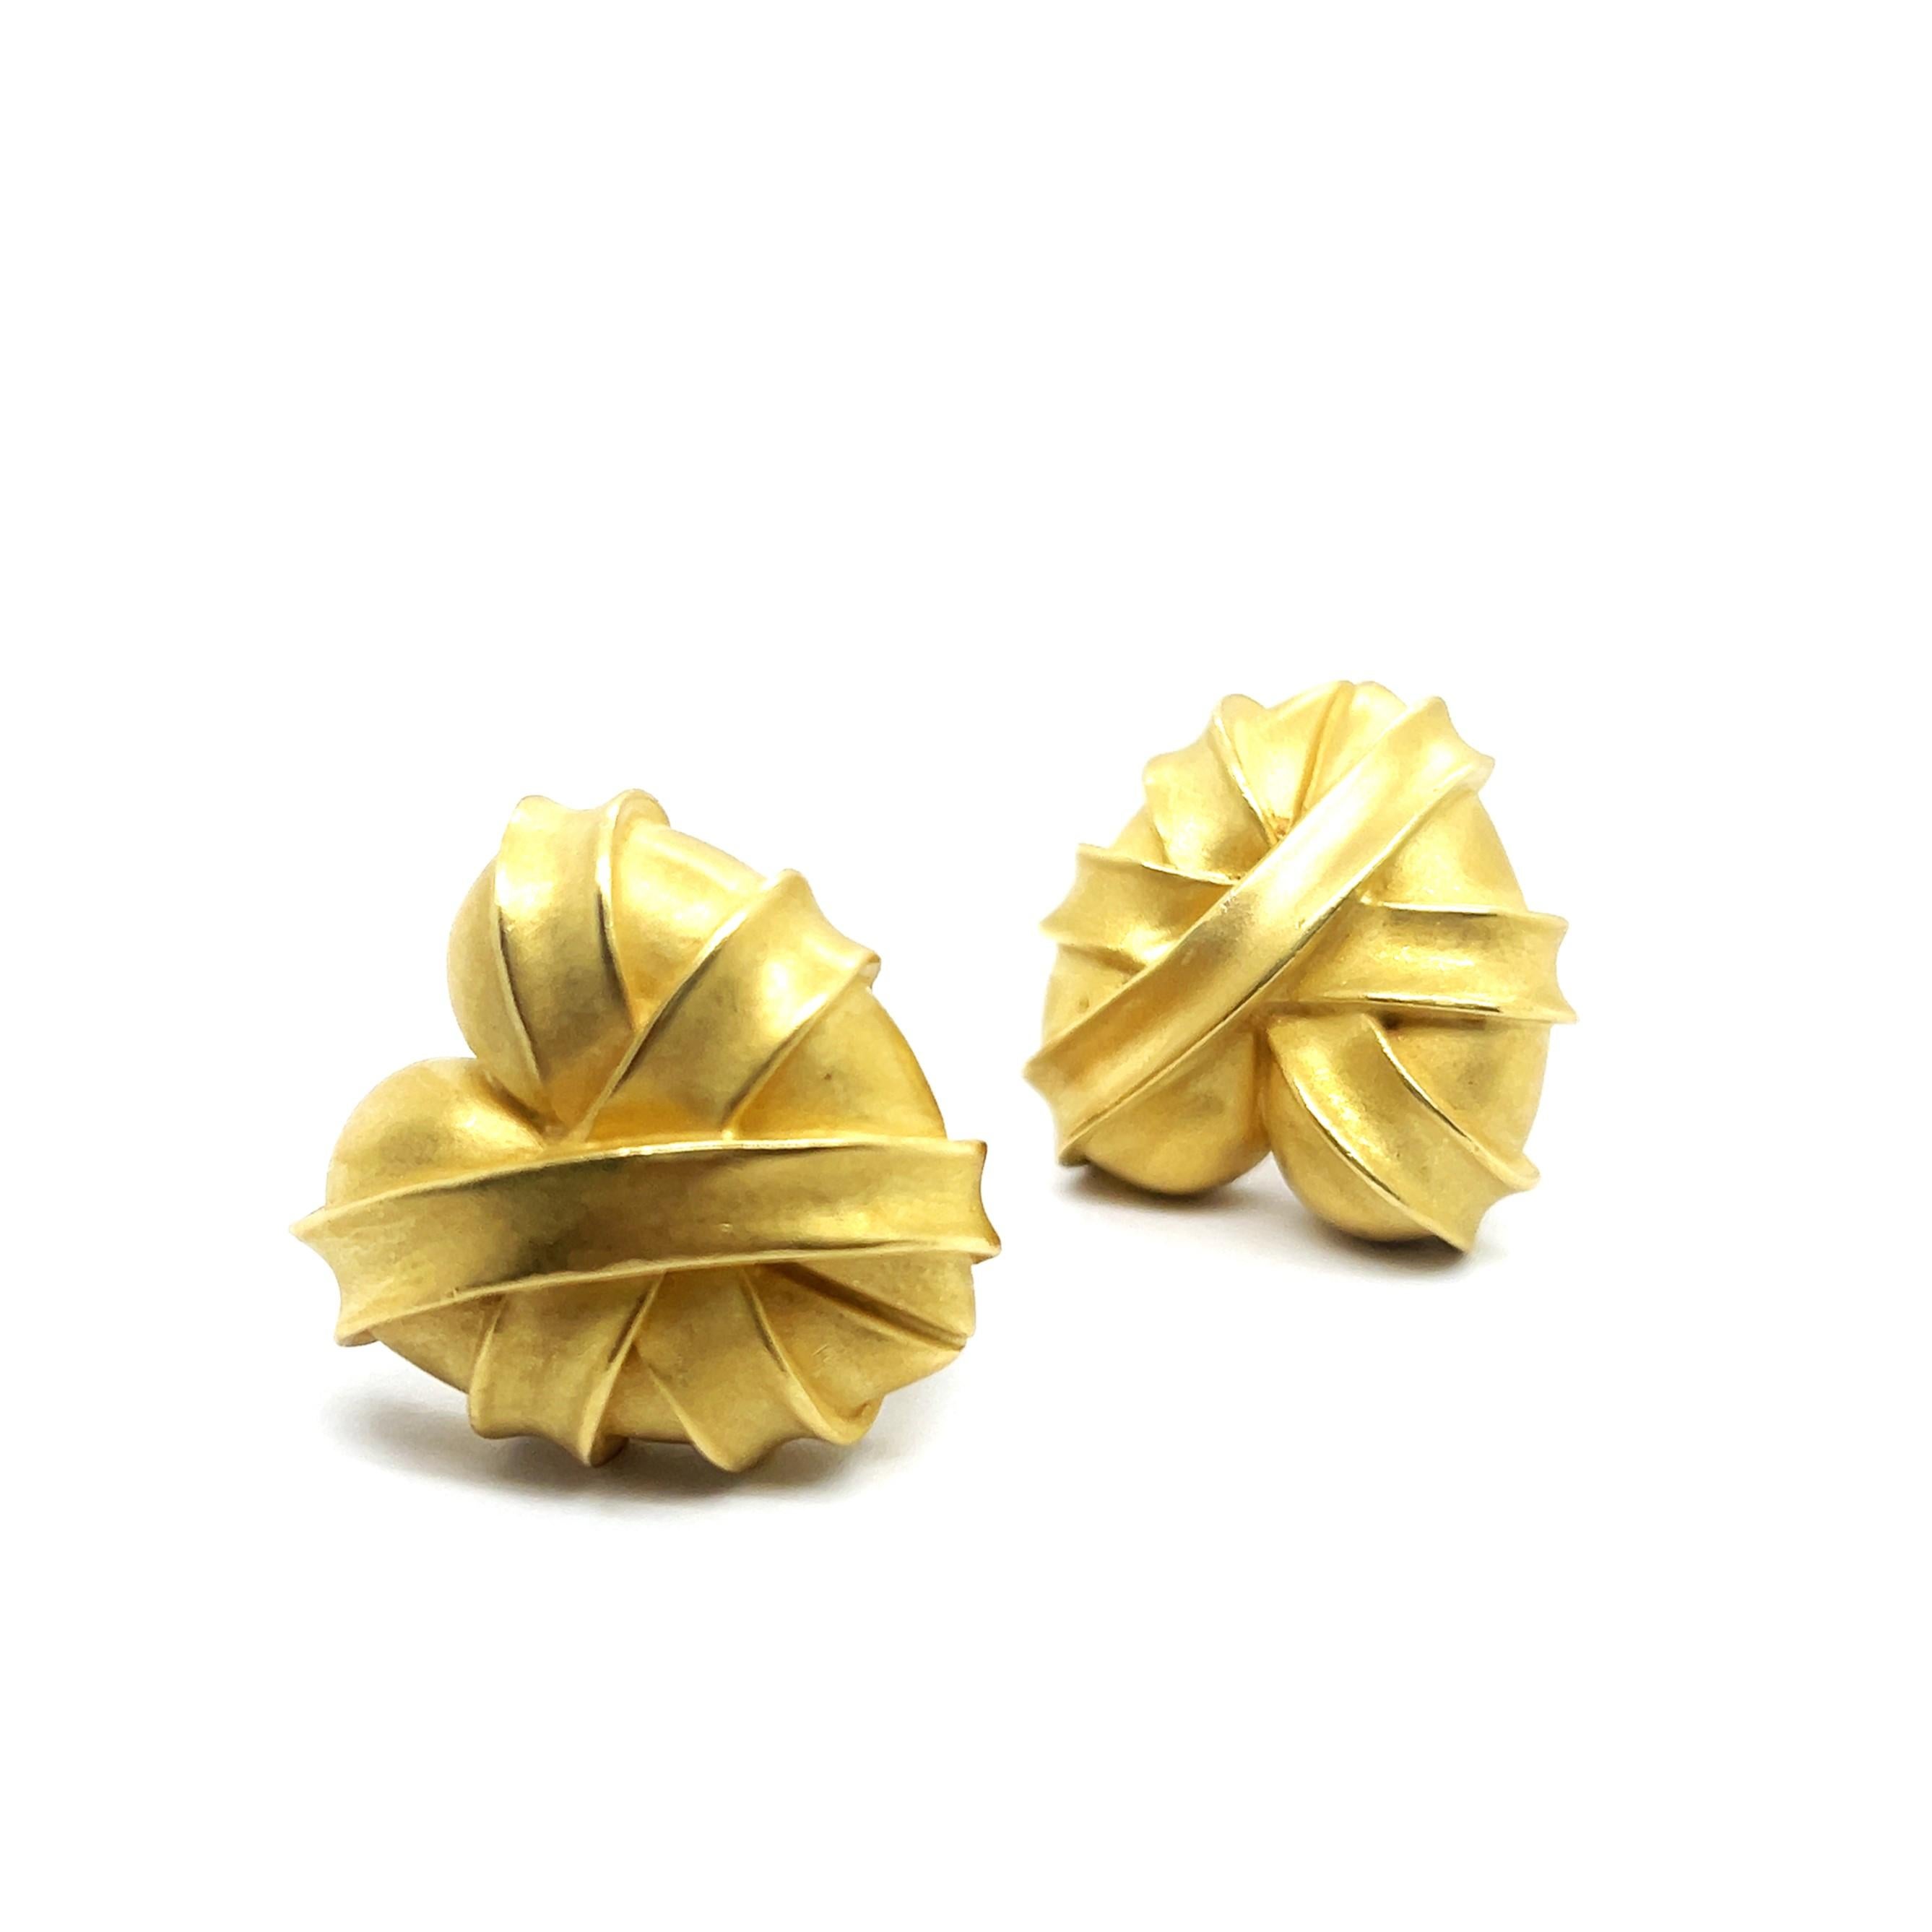 Heart-shaped Earrings in 18 Karat Yellow Gold by Kieselstein-Cord For Sale 10